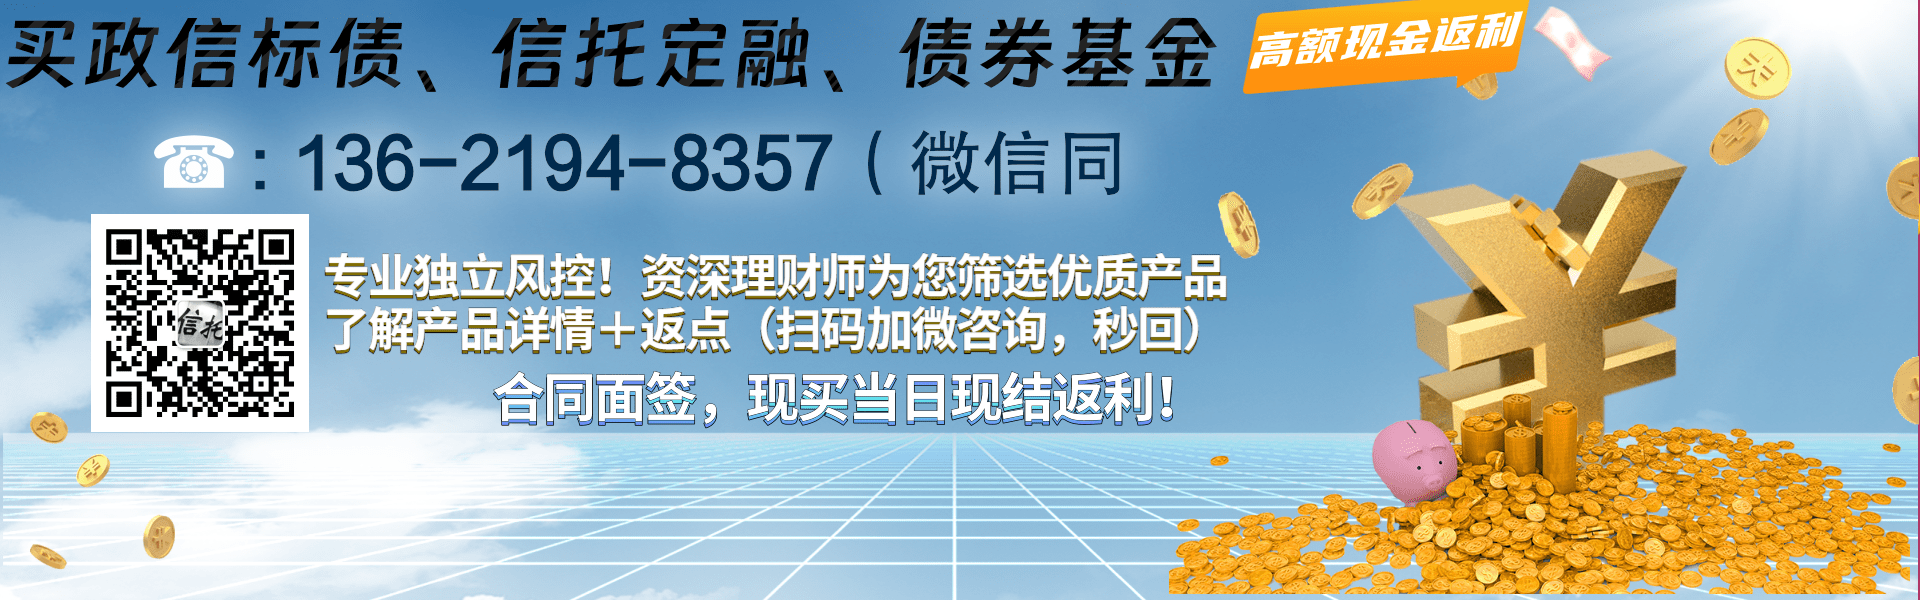 重庆黔江现代农业债权项目